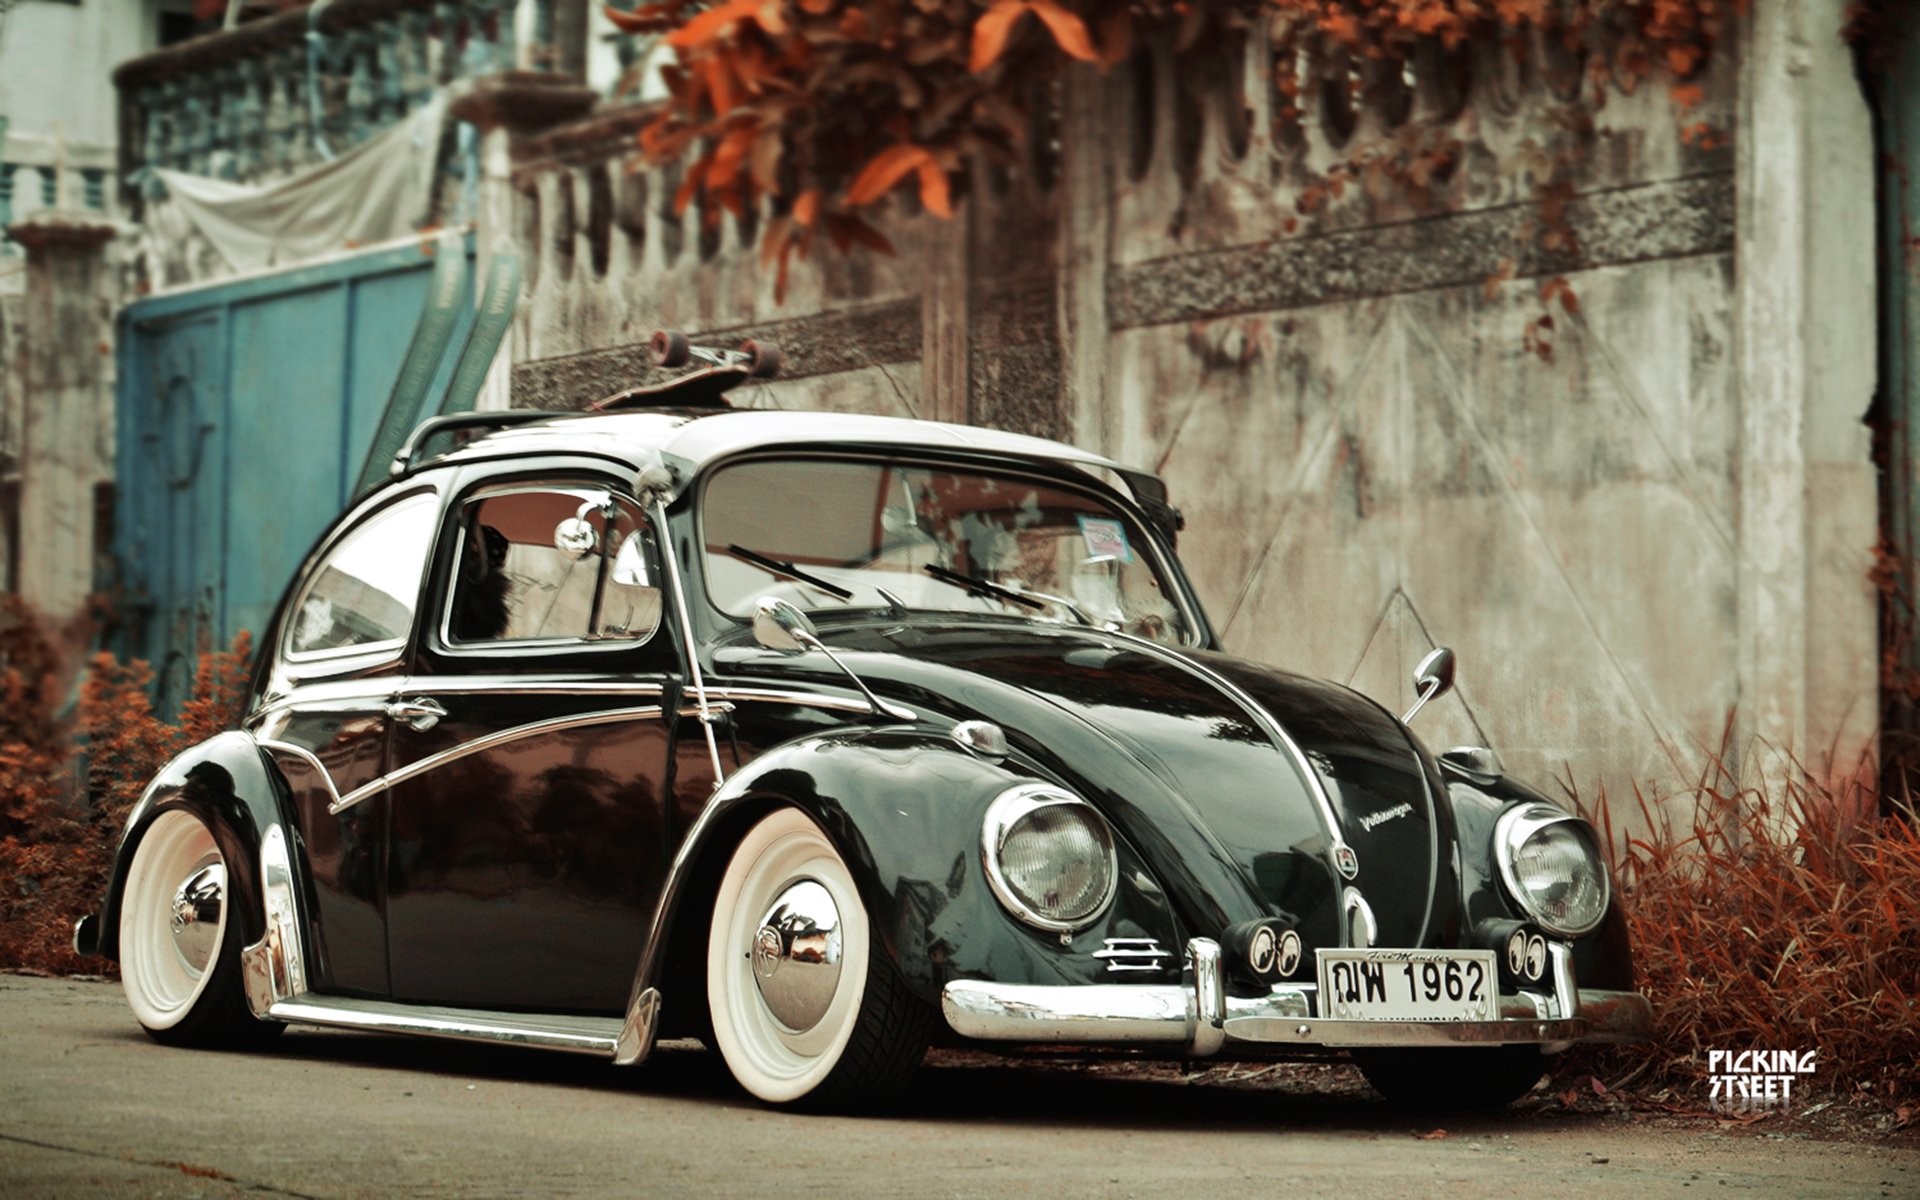 Volkswagen Beetle Wallpapers - Wallpaper Cave